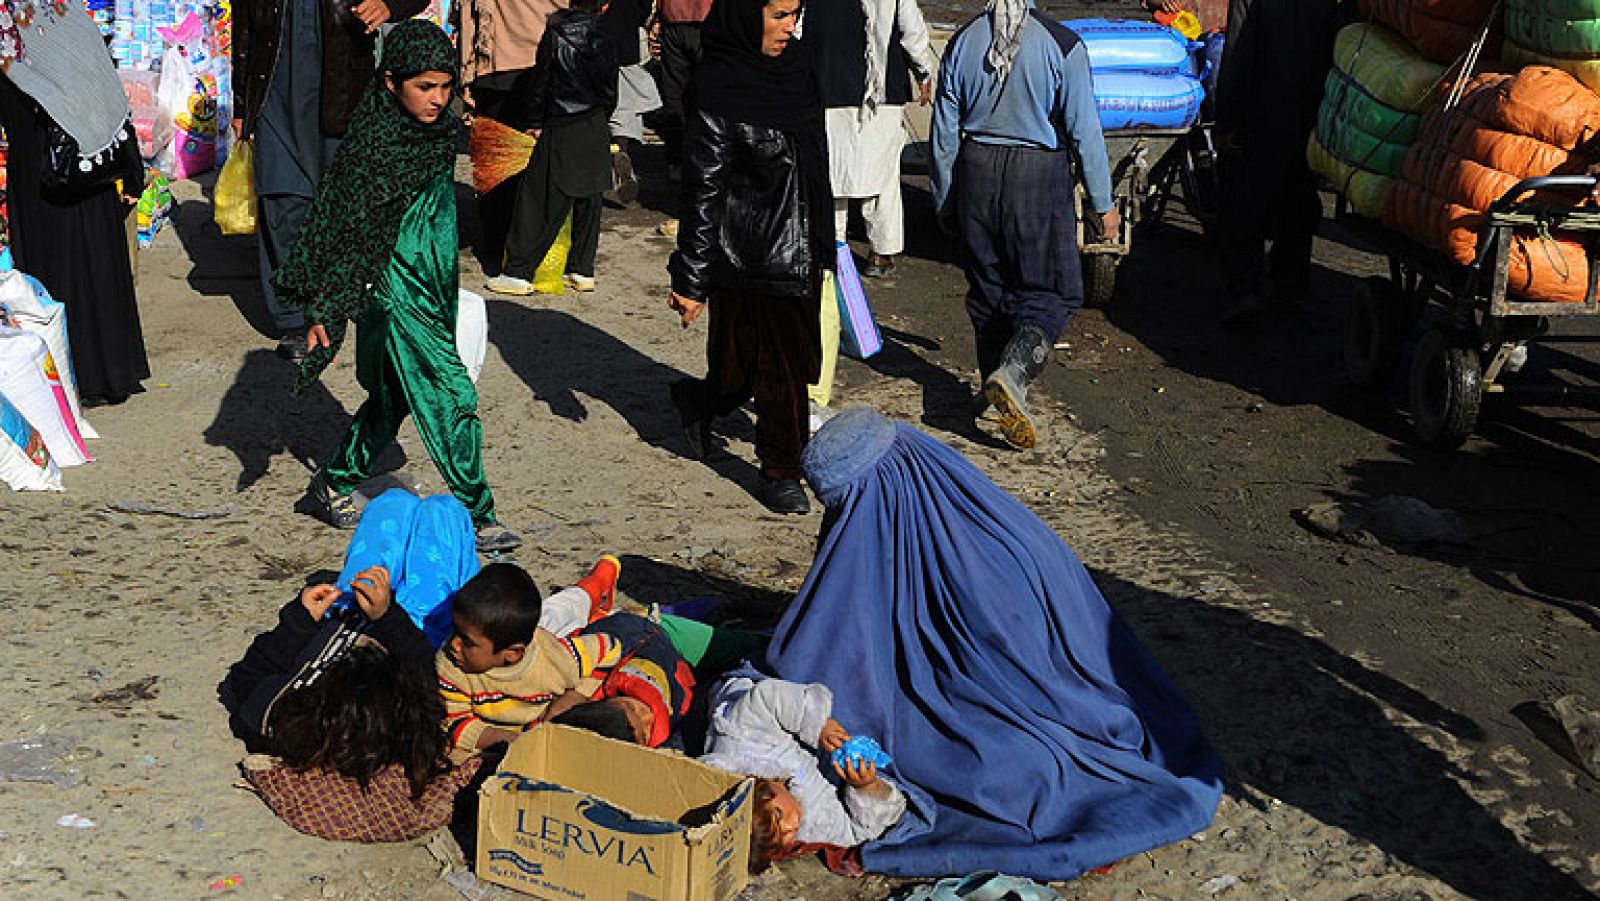  En Afganistán, ya se ha iniciado la cuenta atrás para la salida de las tropas internacionales. A la ONU también le preocupa lo que quedará atrás: un país con unos Derechos Humanos en retroceso. Además de la precaria situación de la mujer, inquieta el aumento de la esclavitud sexual y de la prostitución infantil. Hay niños a los que visten de niñas para que bailen ante los hombres. A menudo, son víctimas de abuso sexual, utilizados como símbolo de poder por los señores de la guerra. El gobierno afgano se plantea prohibir esta práctica pedofilia tolerada durante siglos en nombre de la tradición y la cultura.